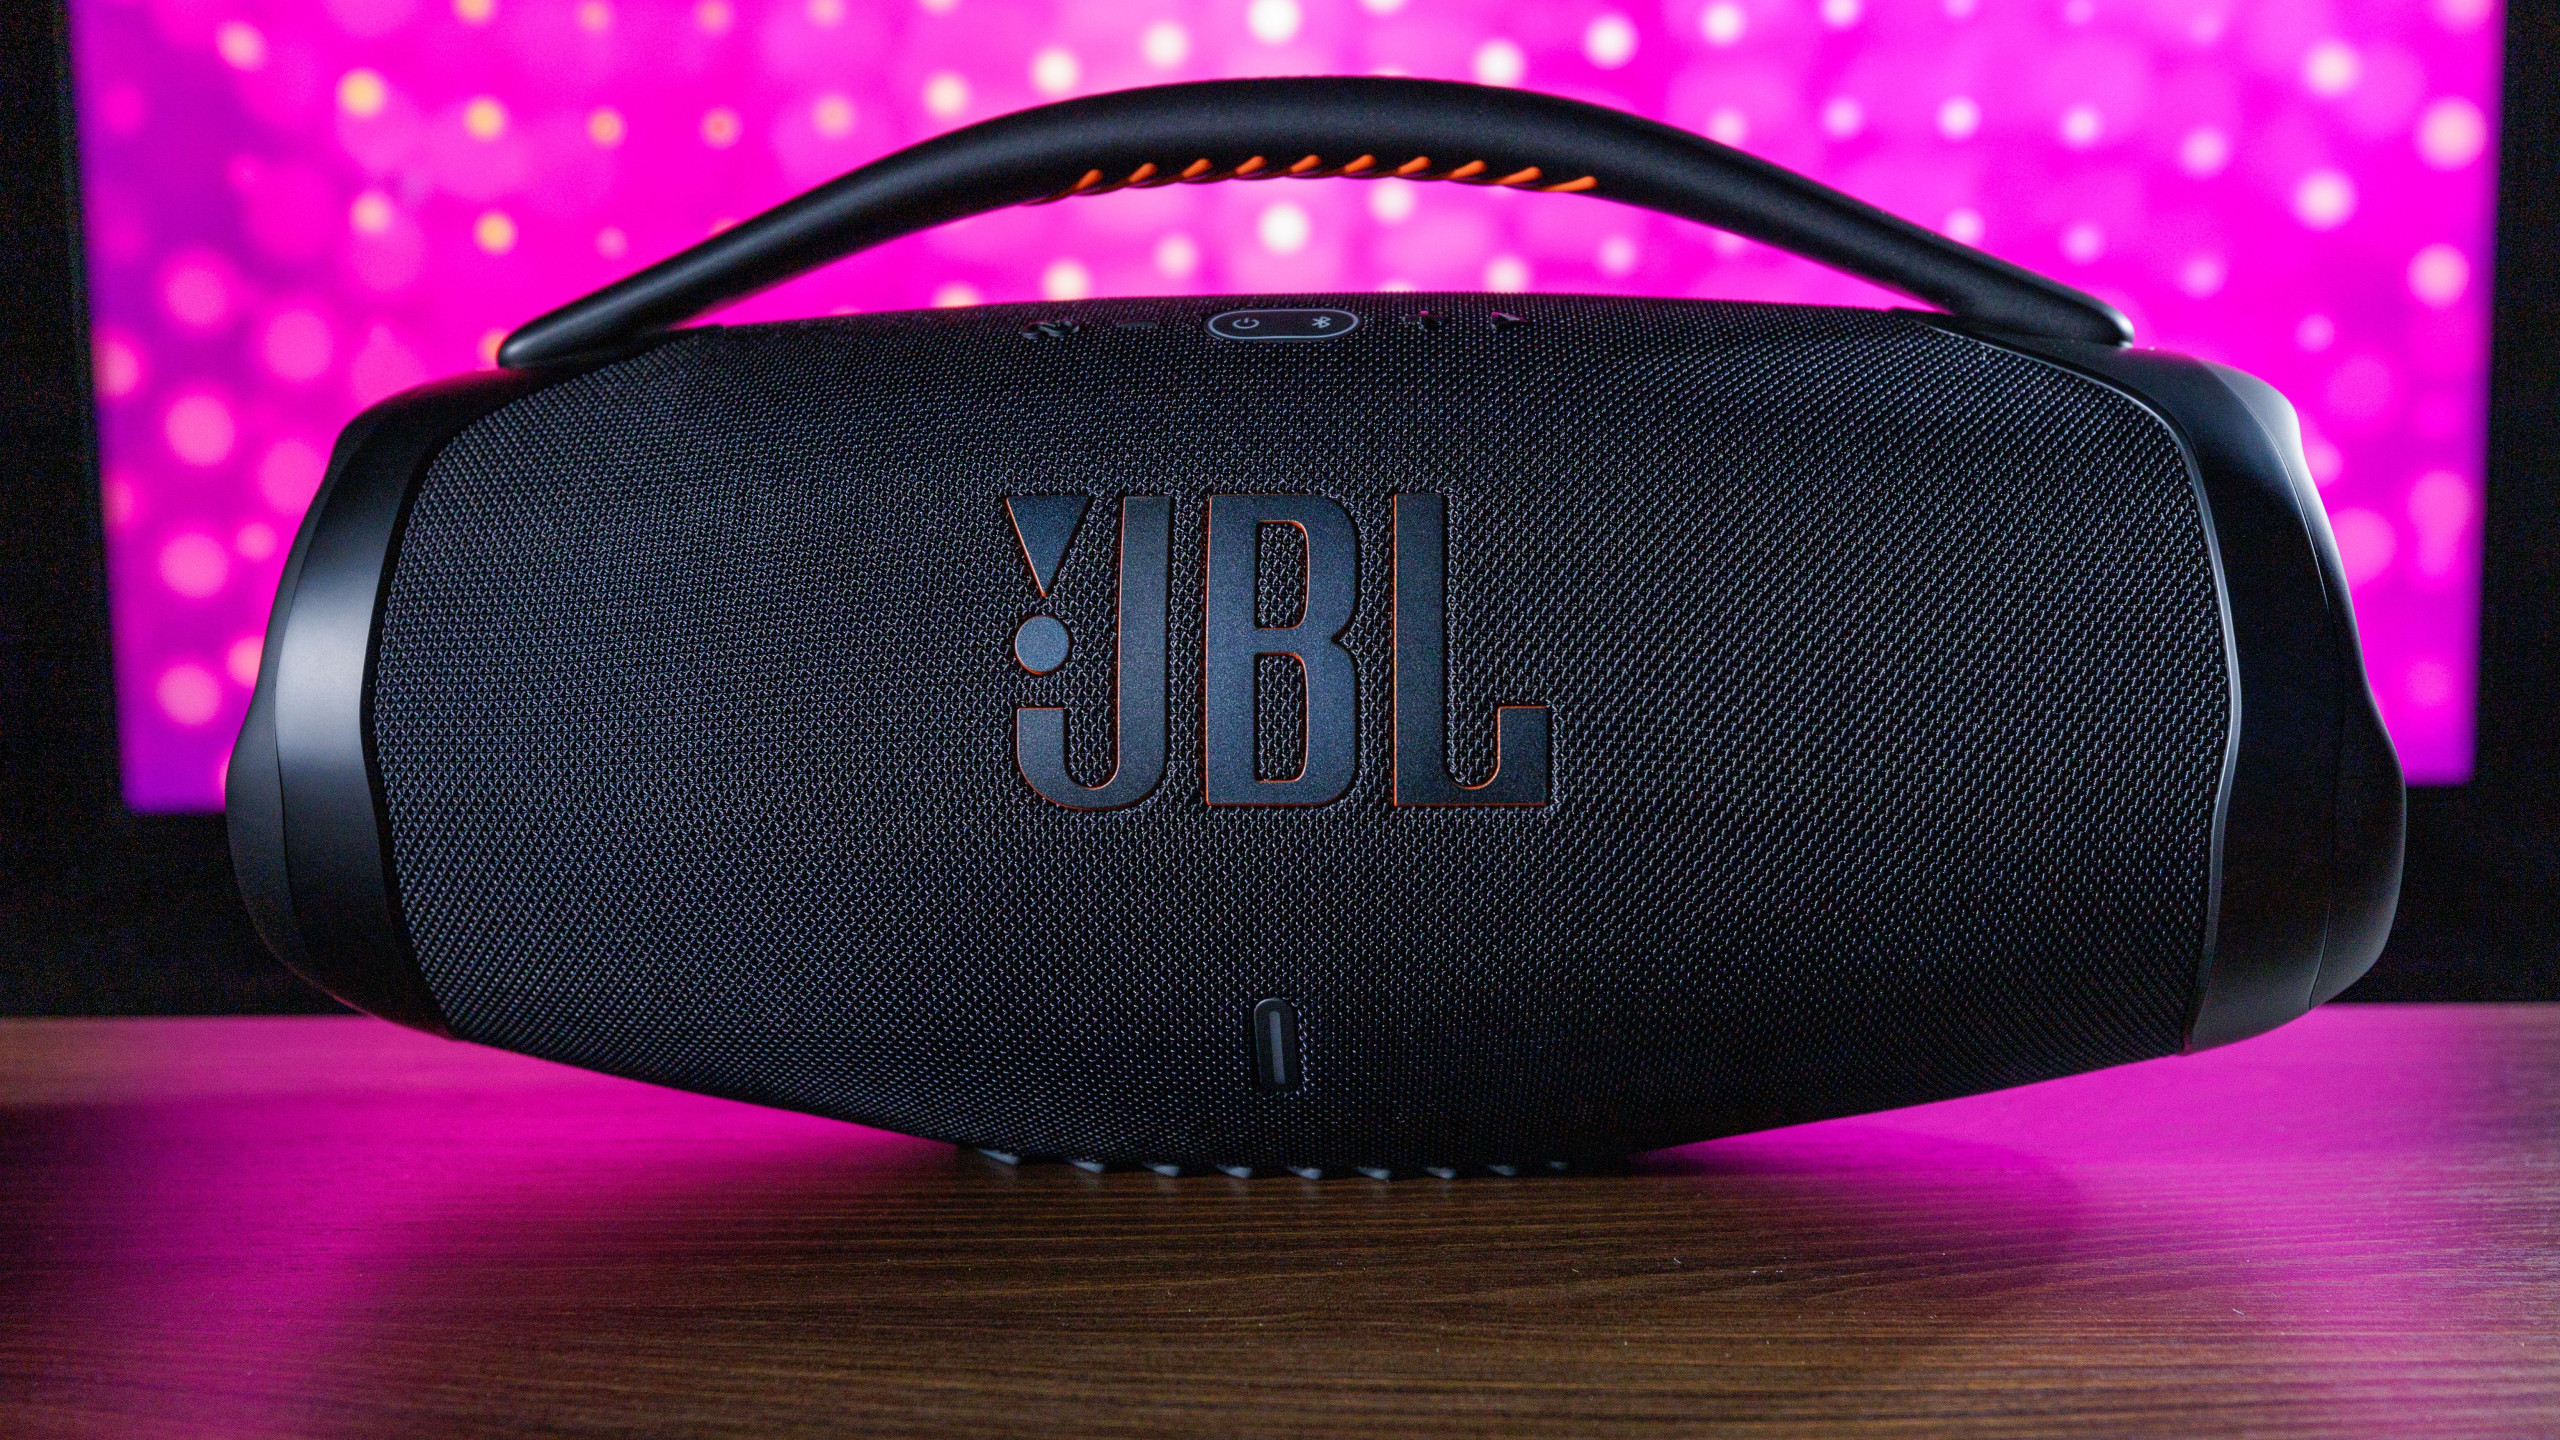 Fundo rosa, destacando a caixa de som preta da marca JB em uma bancada marrom